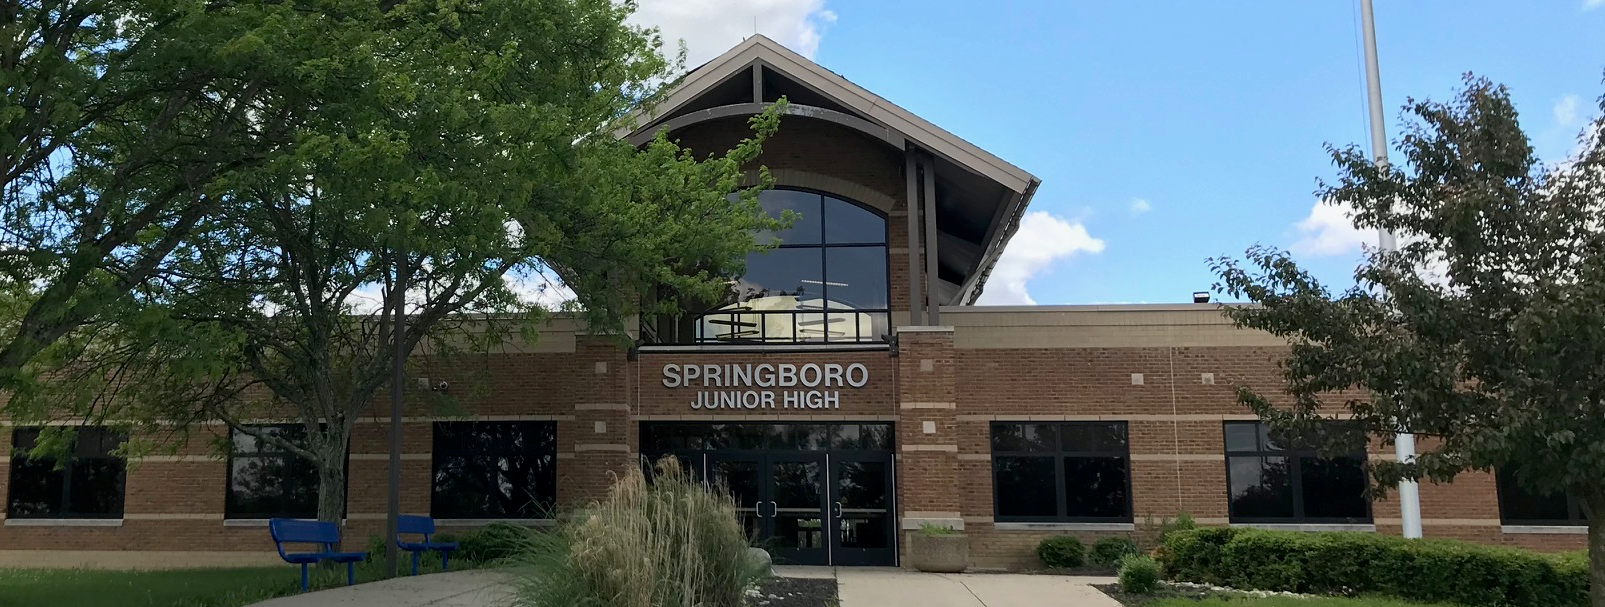 Springboro Junior High School